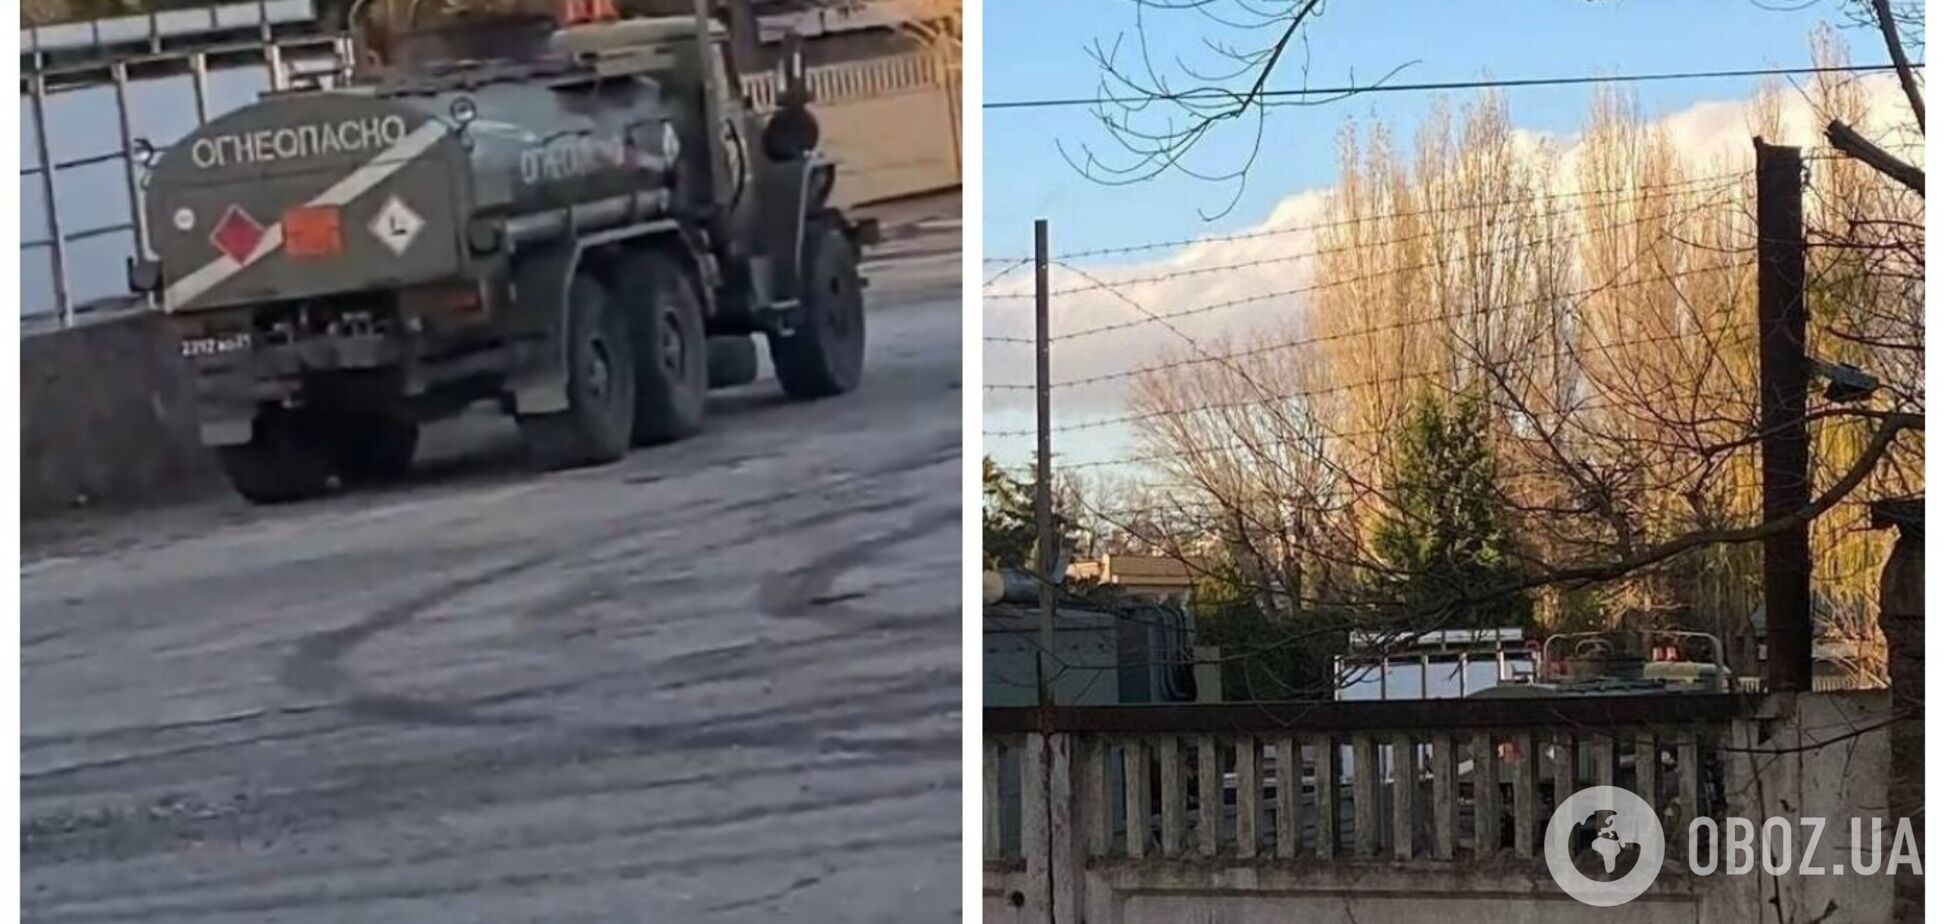 Агенты 'Атеш' проникли на территорию воинской части оккупантов в Феодосии: что удалось разведать. Фото и видео